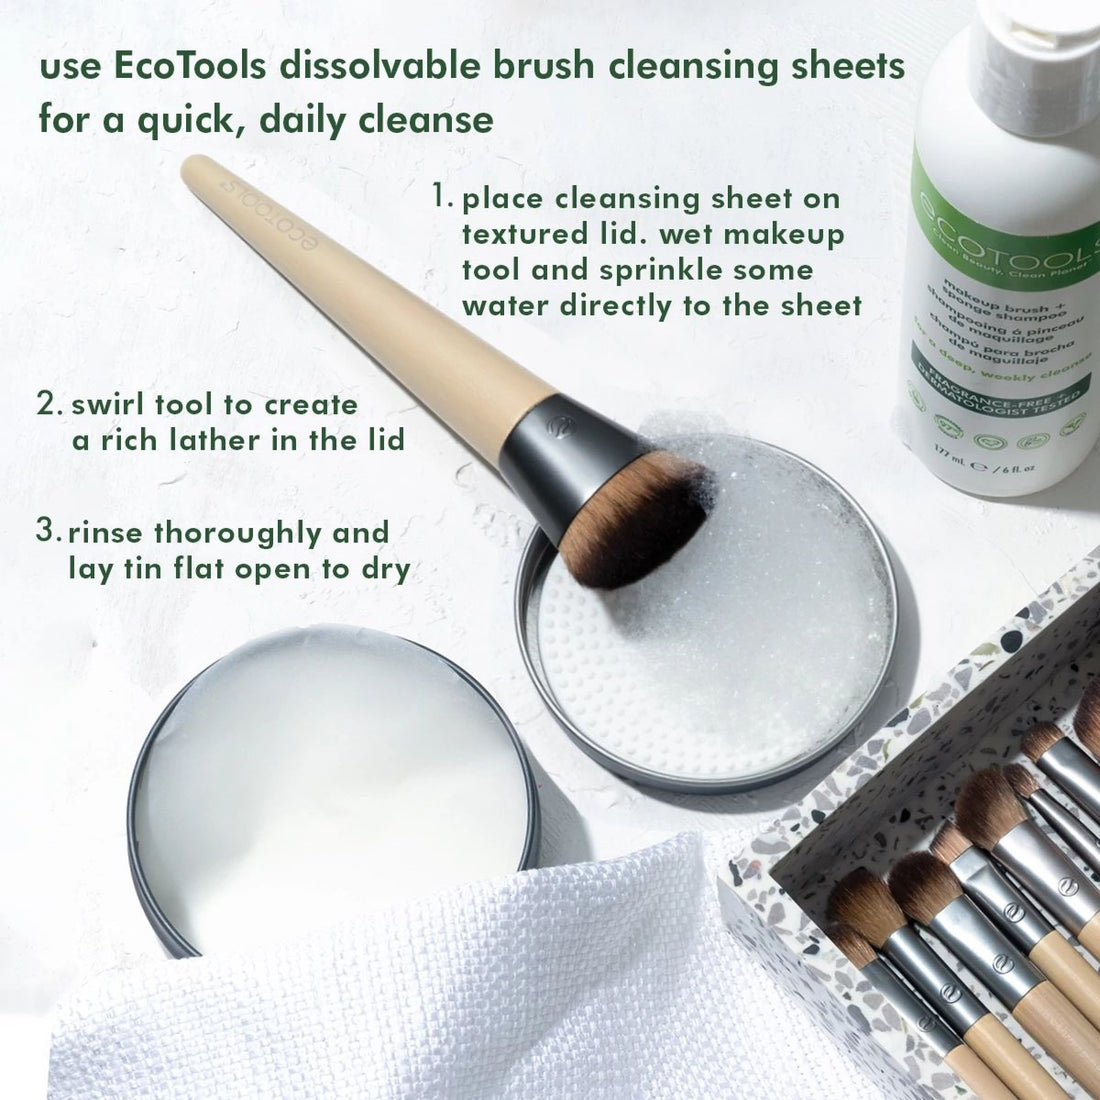 Buy Brush Rinser ORIGINAL Paint Brush Rinser Makeup Brush Cleaner